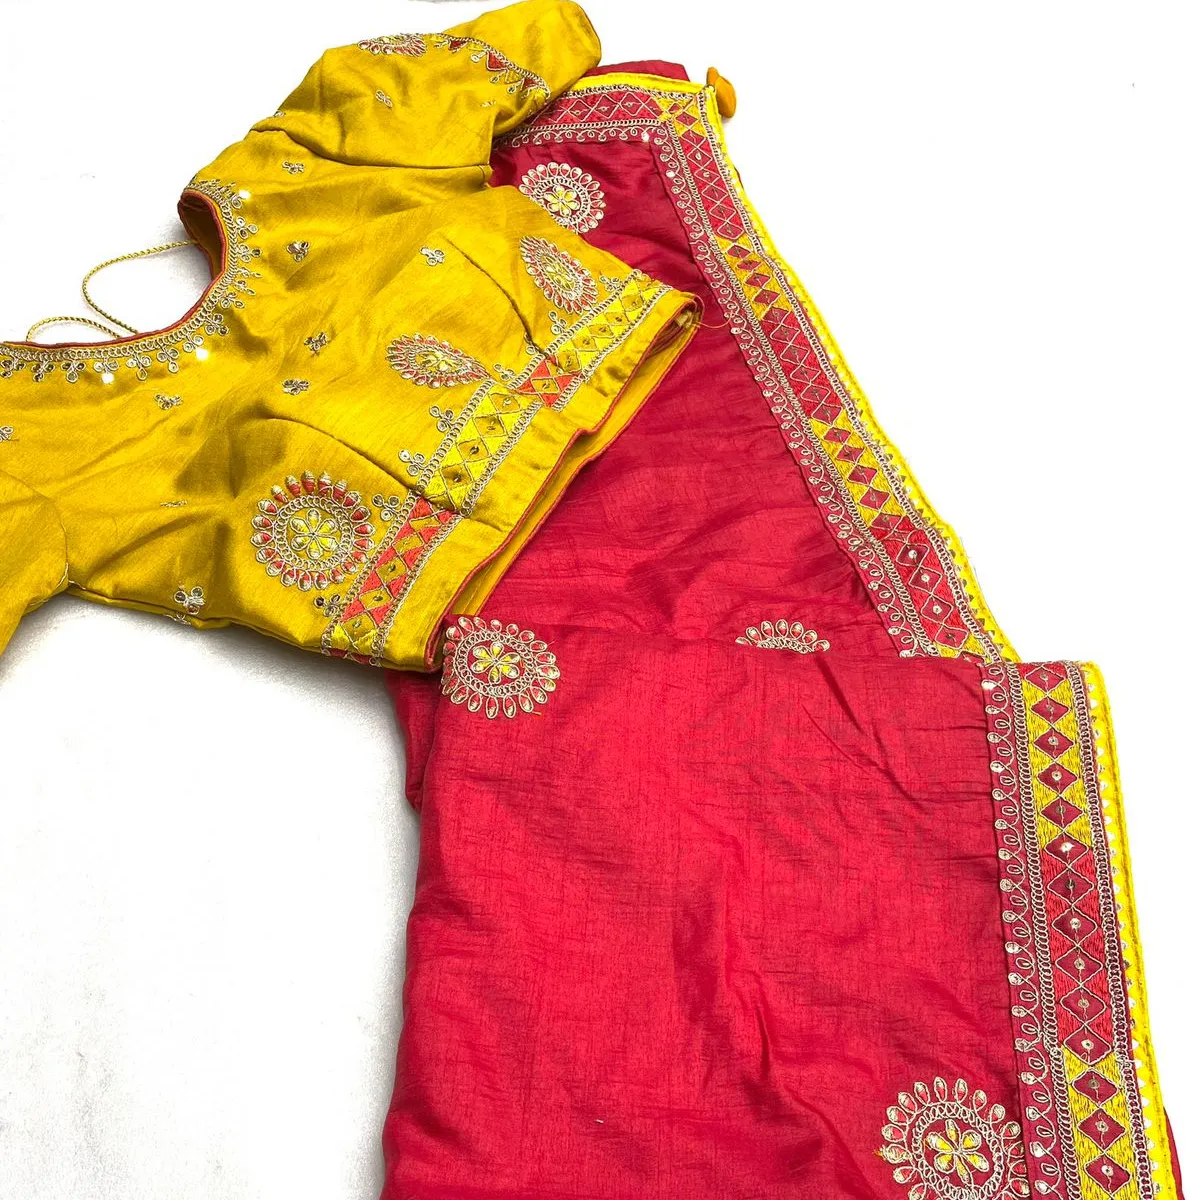 Новый хит дизайн в стизаной блузке великолепный плотный сари dola silks с несколькими блестками и программированием и красивая кнопка во всем